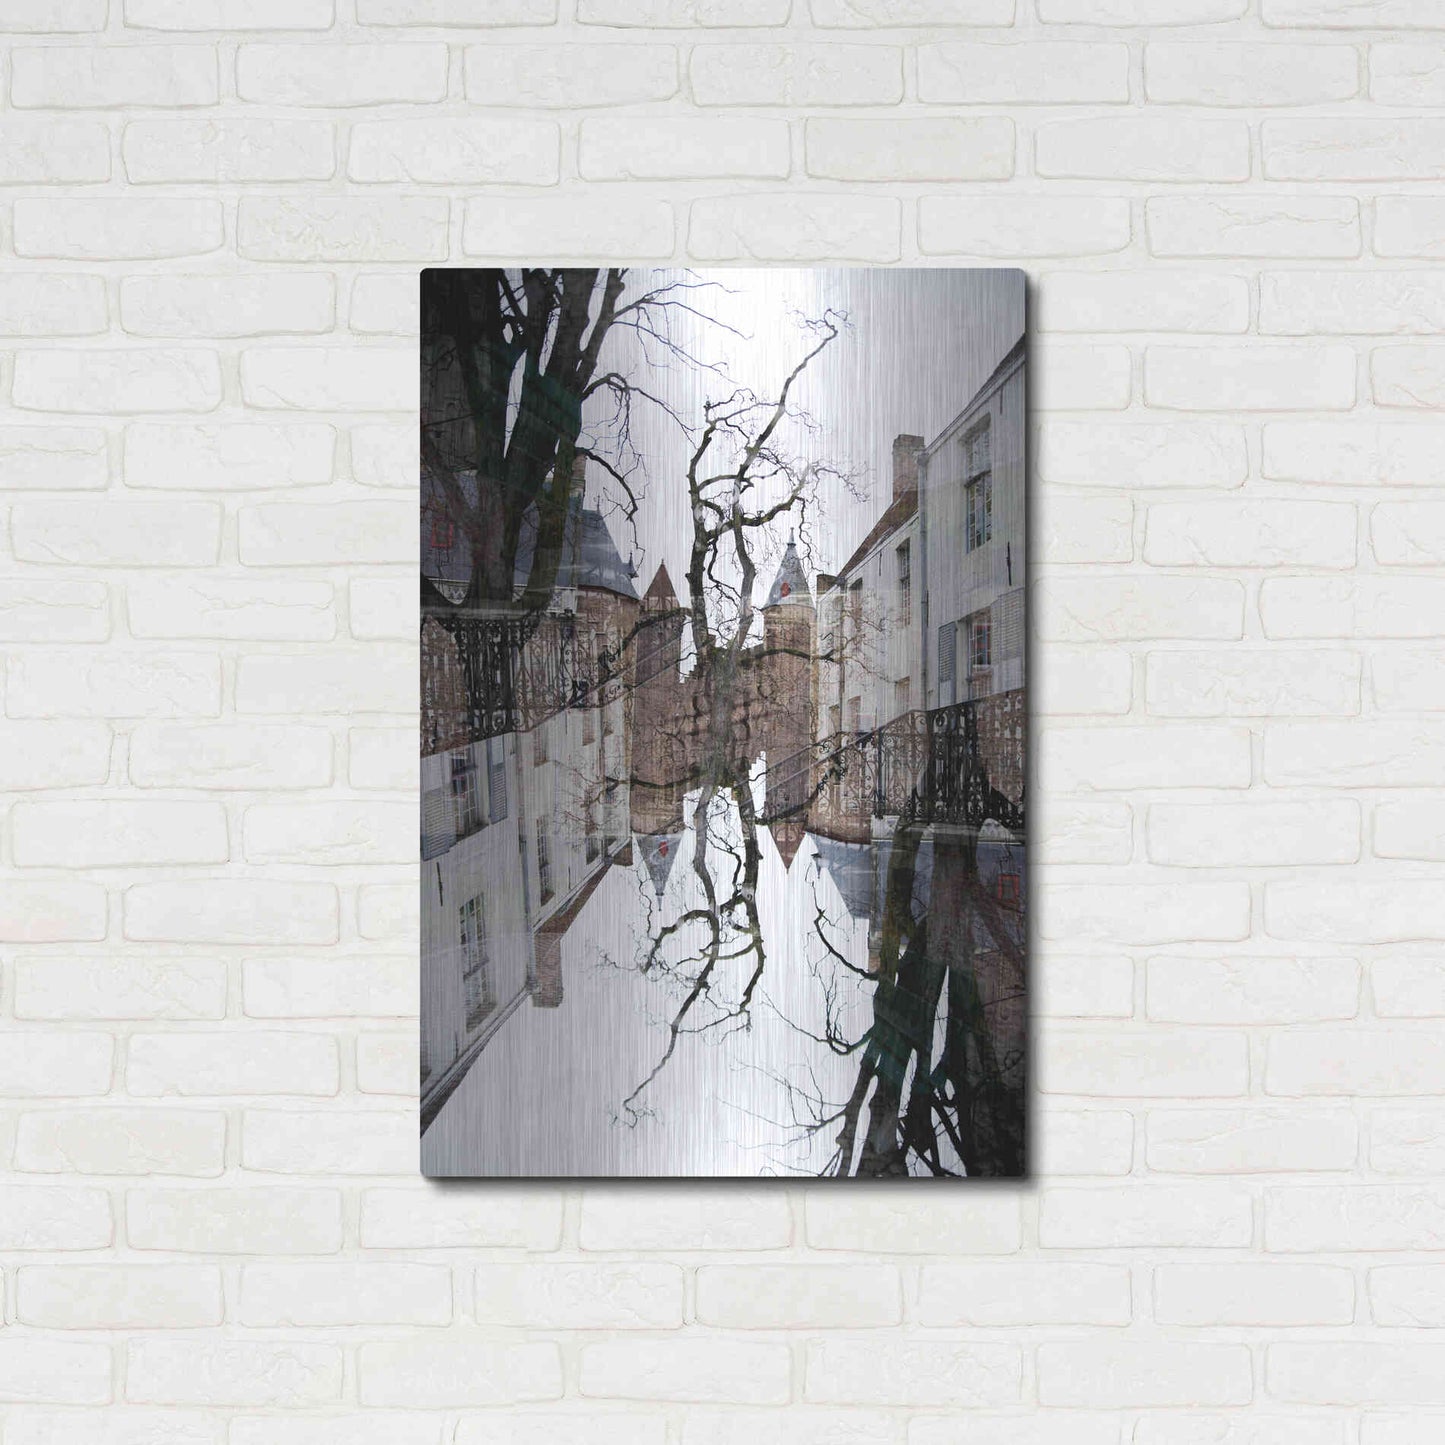 Luxe Metal Art ' Bruges 227' by Robin Vandenabeele, Metal Wall Art,24x36